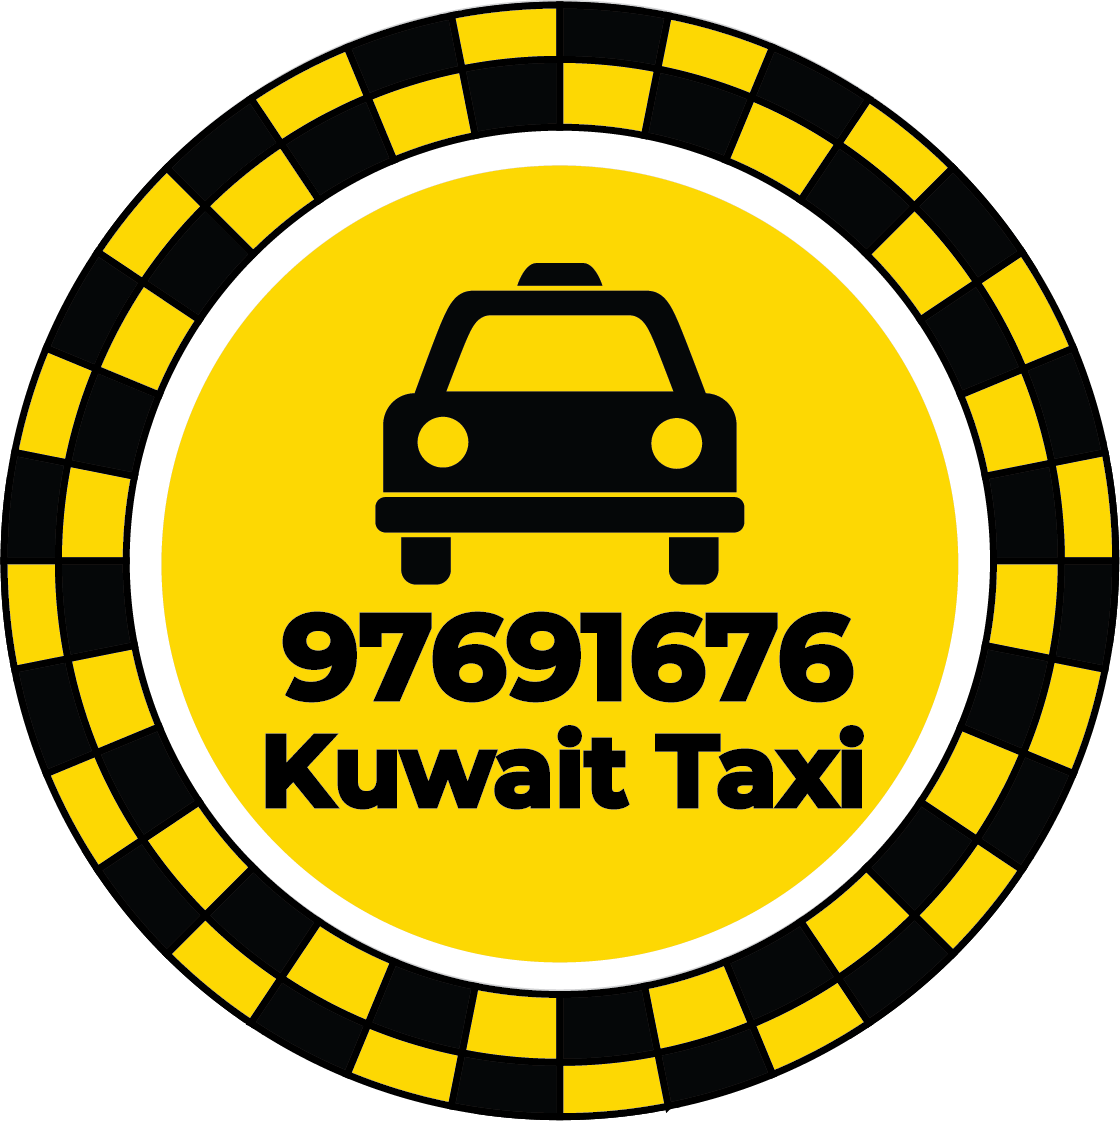 Egaila Taxi 97691676 - Egaila Taxi Number